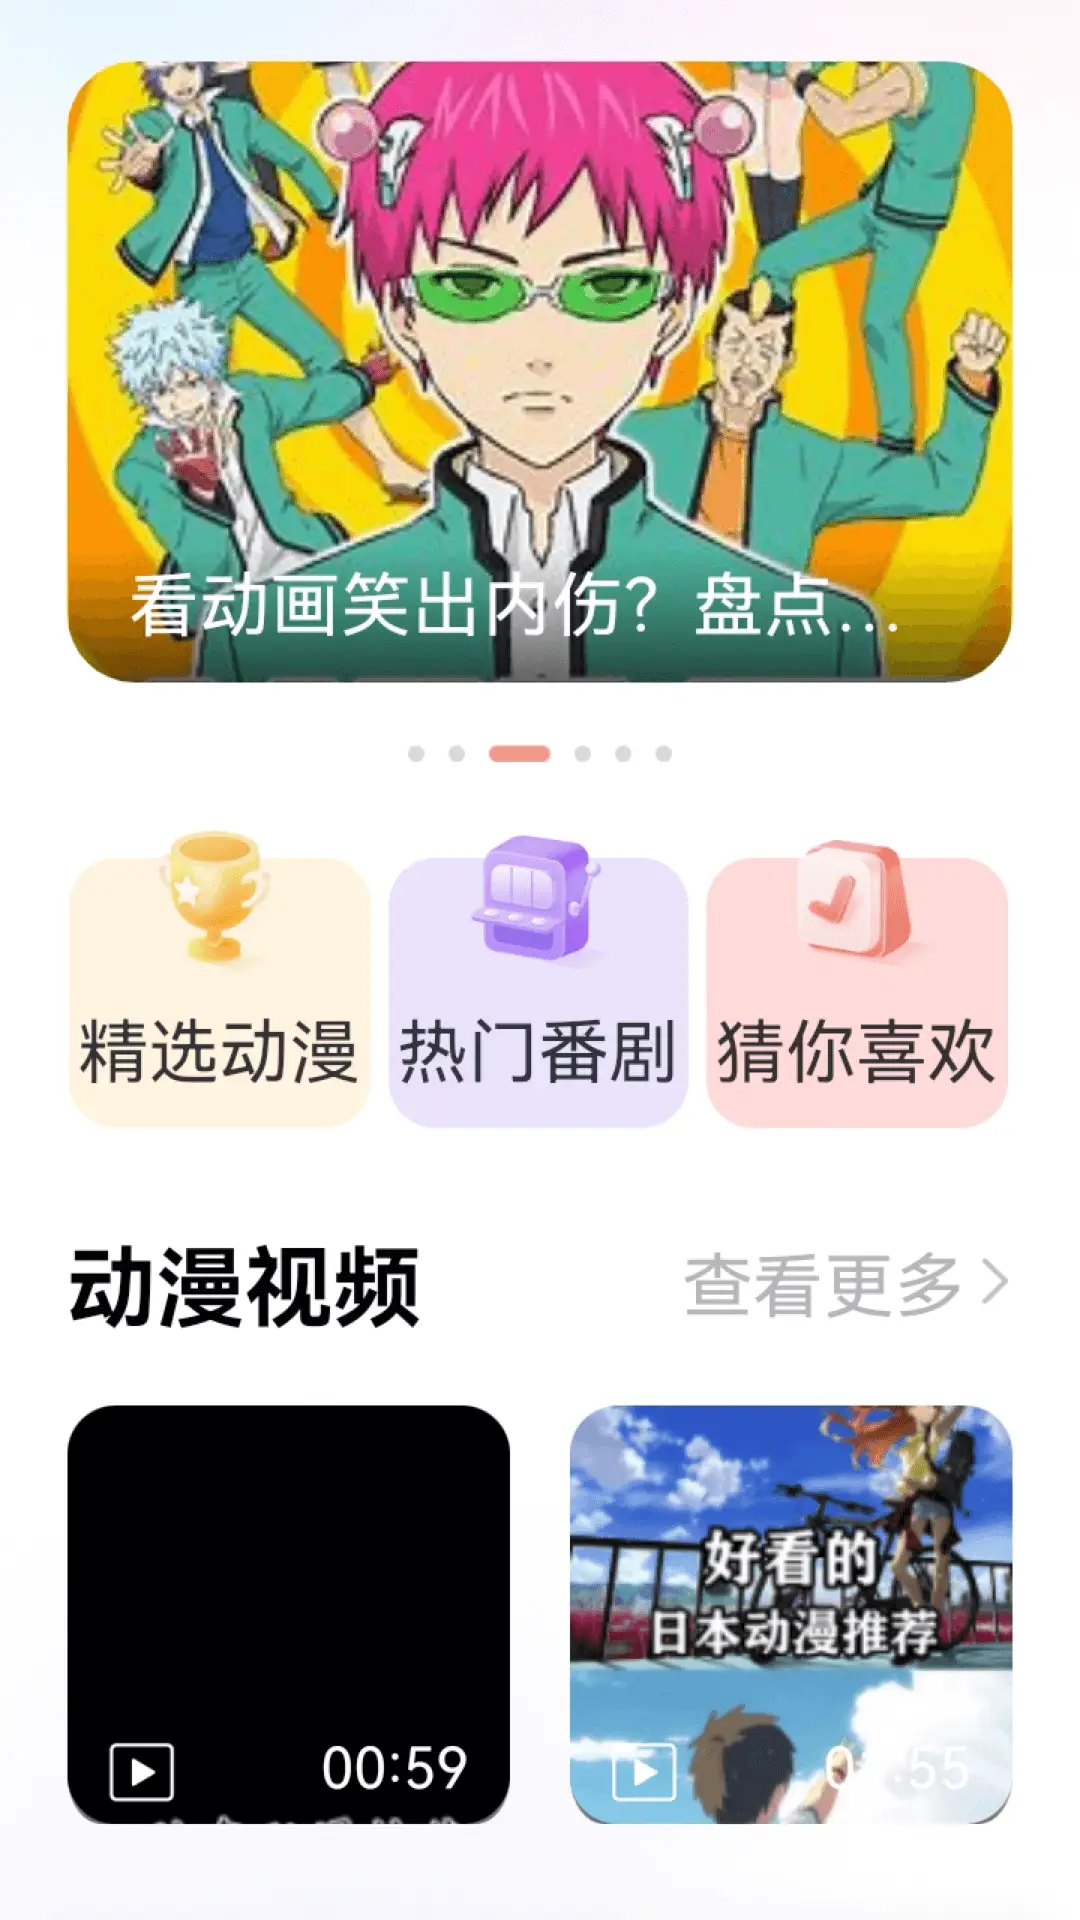 葫芦影业下载官网app1图